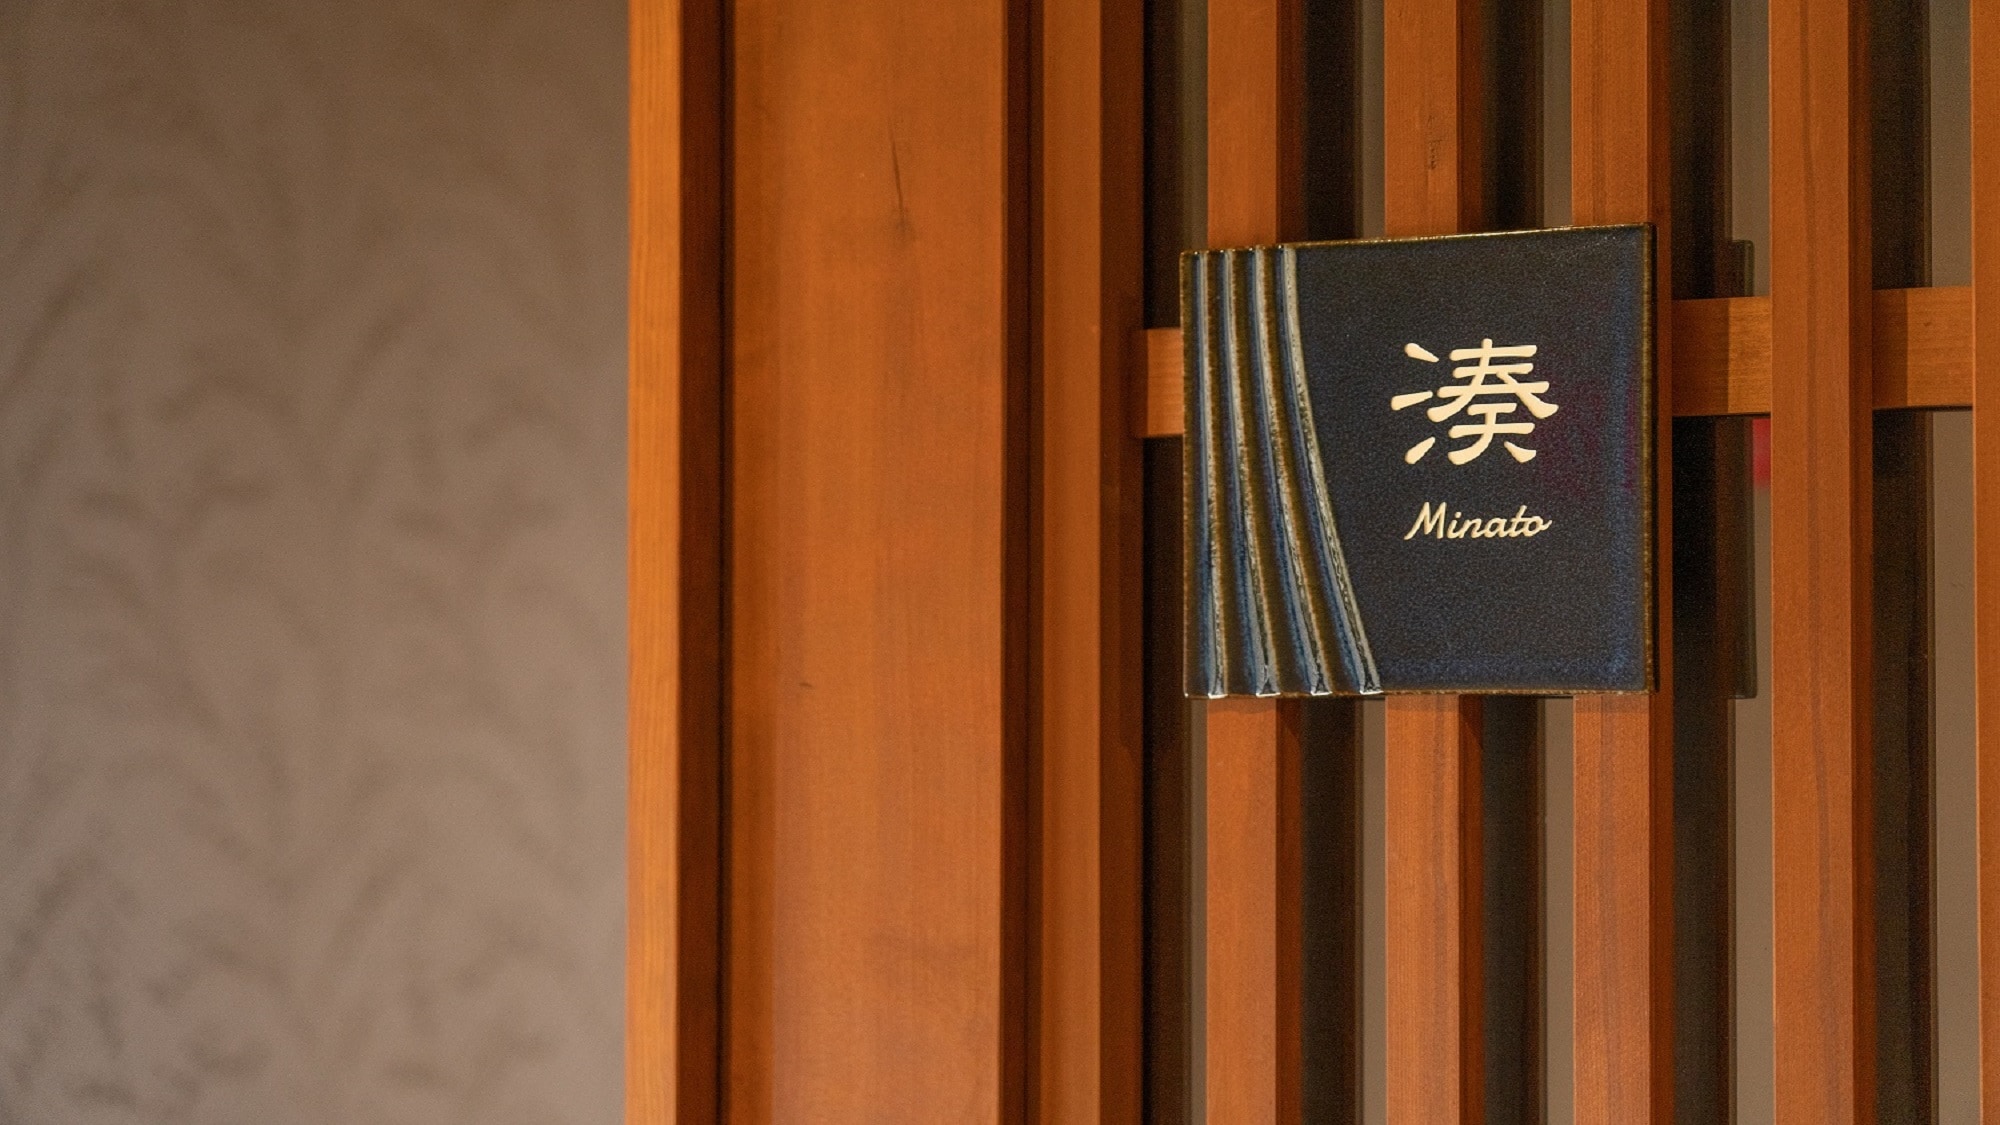 特殊房间“Minato minato”房间入口[禁止吸烟]